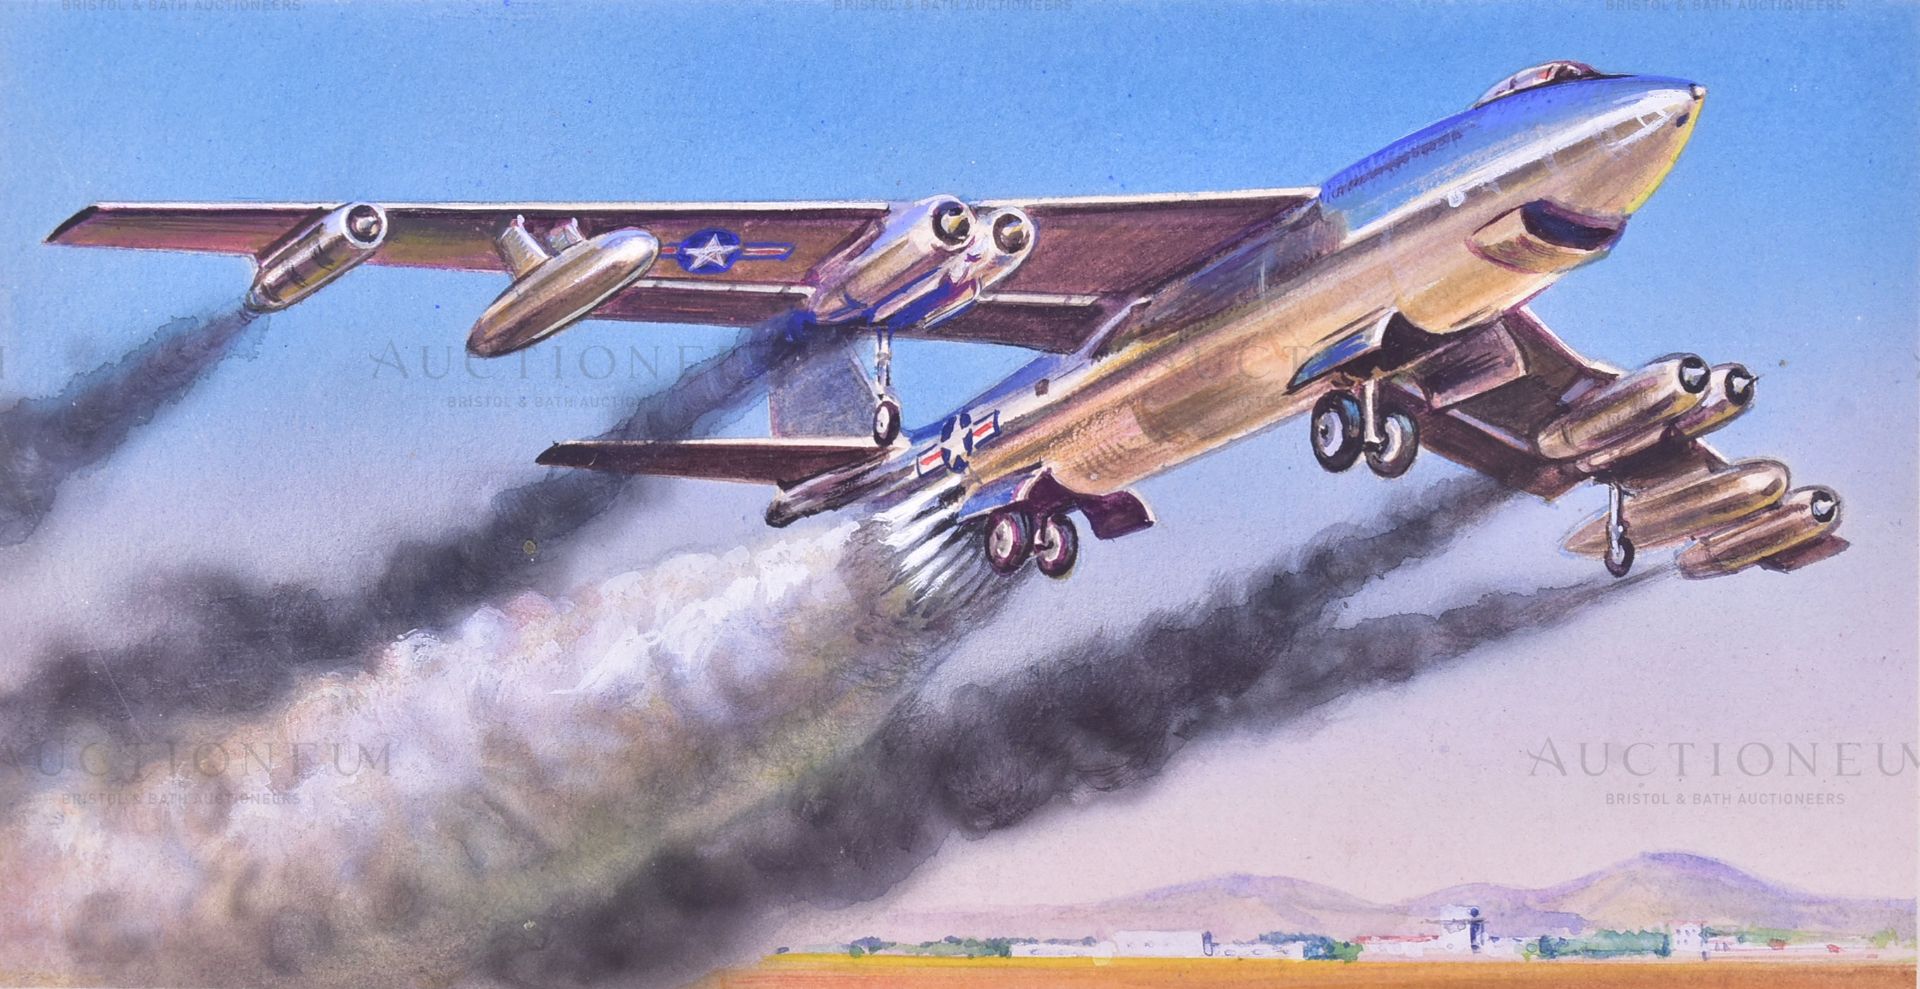 RICHARD WARD - MILITARY AIRCRAFT ARTWORKS - Image 2 of 6